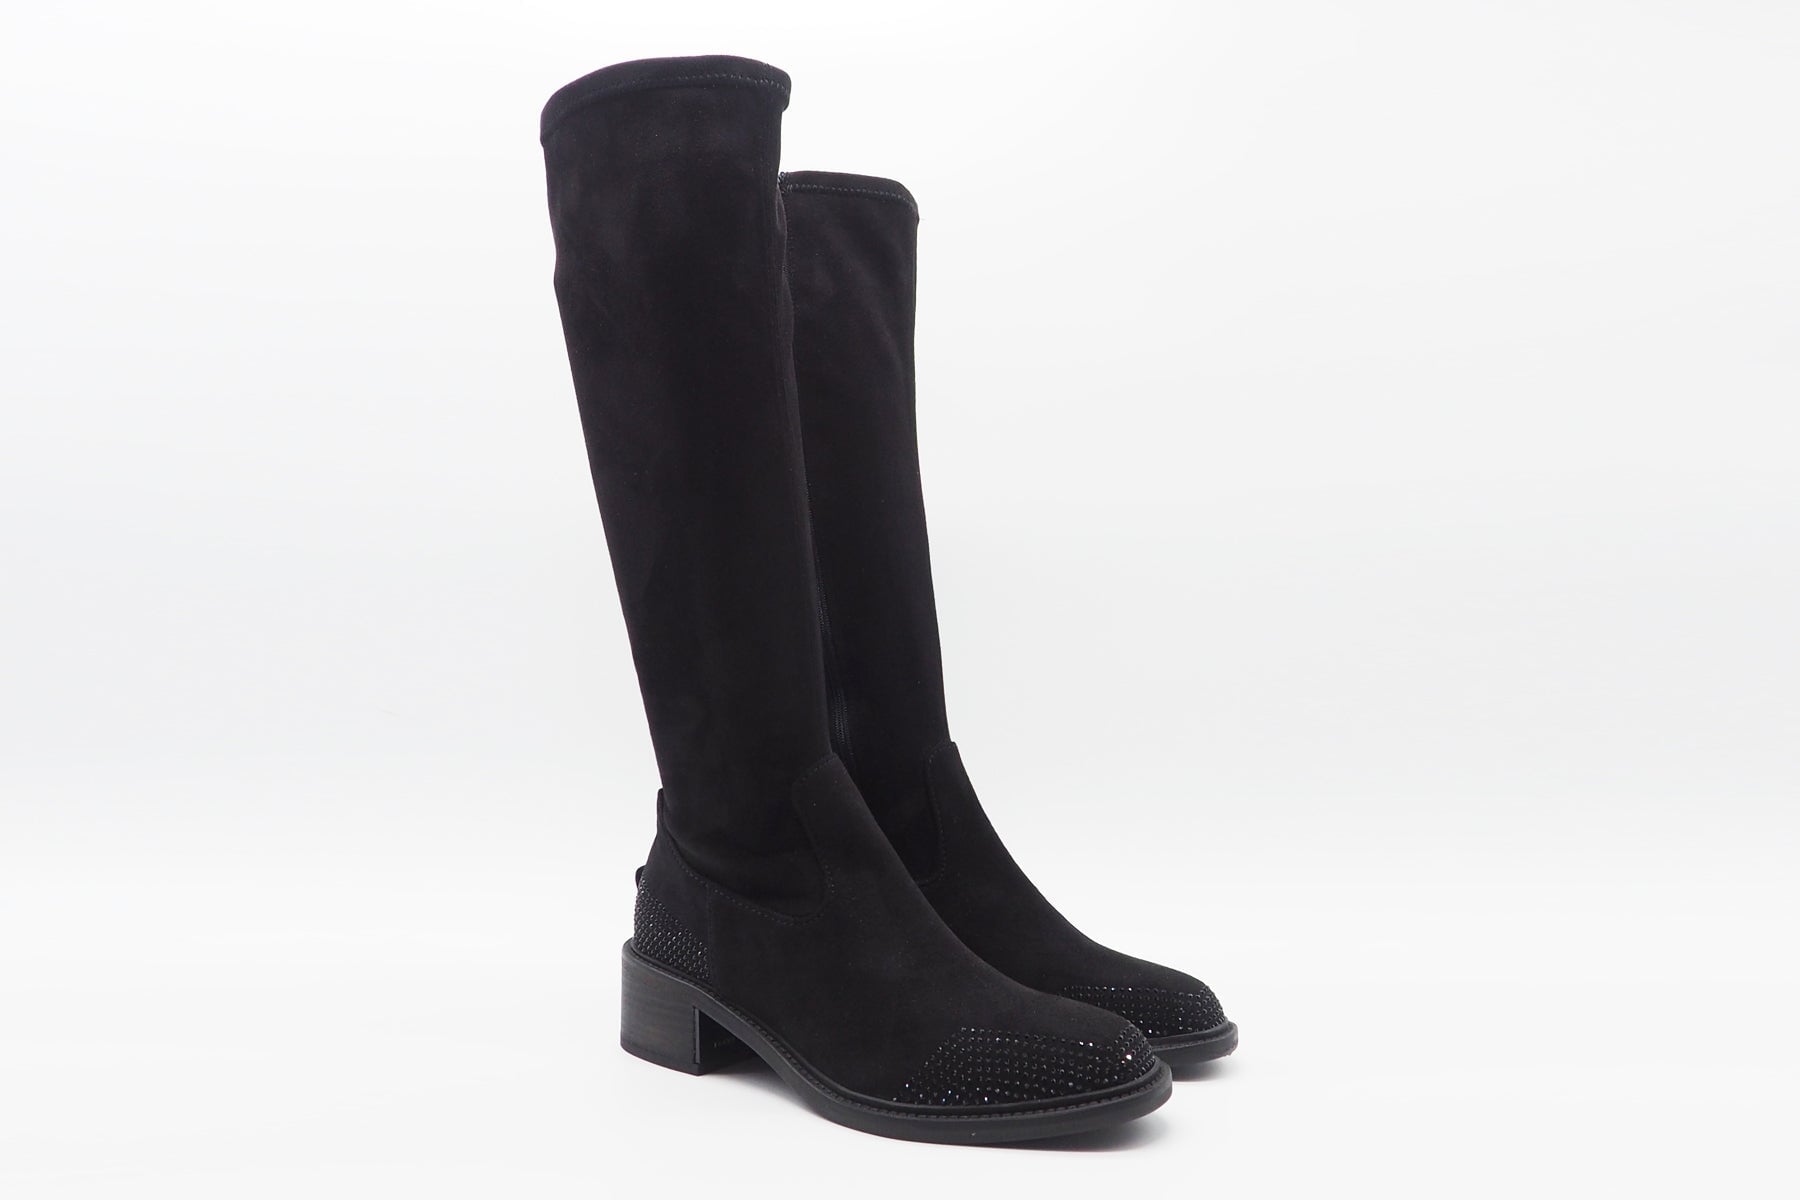 Damen Stiefel aus Veloursleder in Schwarz mit Strasssteinen - Absatz 6cm Damen Stiefel Kennel & Schmenger 